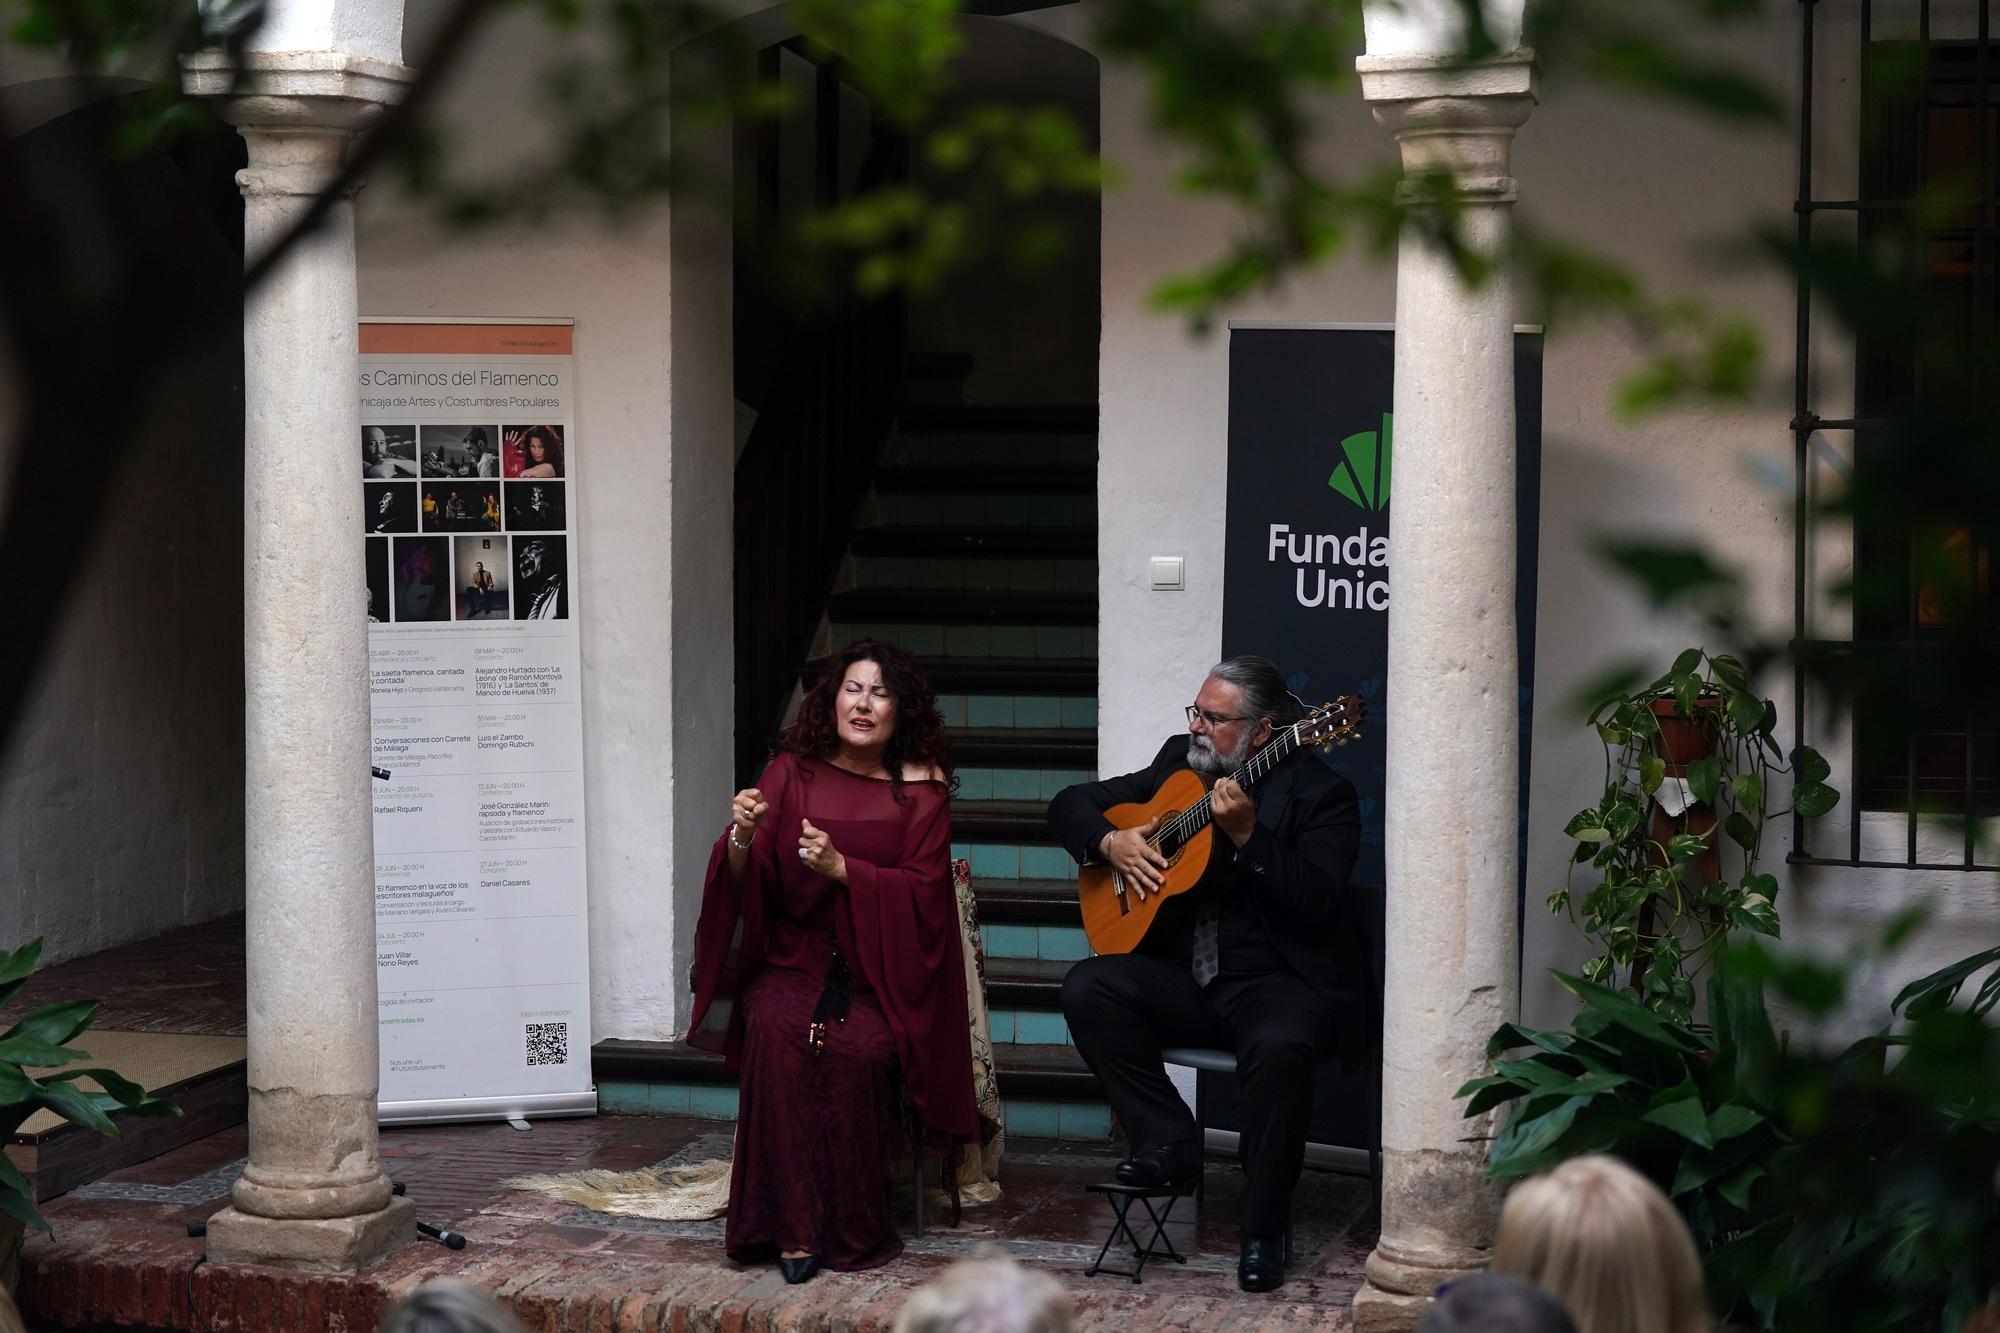 Concierto de flamenco de la cantaora malagueña, Antonia Contreras y el guitarrista Juan Ramón Caro, dentro del Ciclo Hondos Caminos del Flamenco.